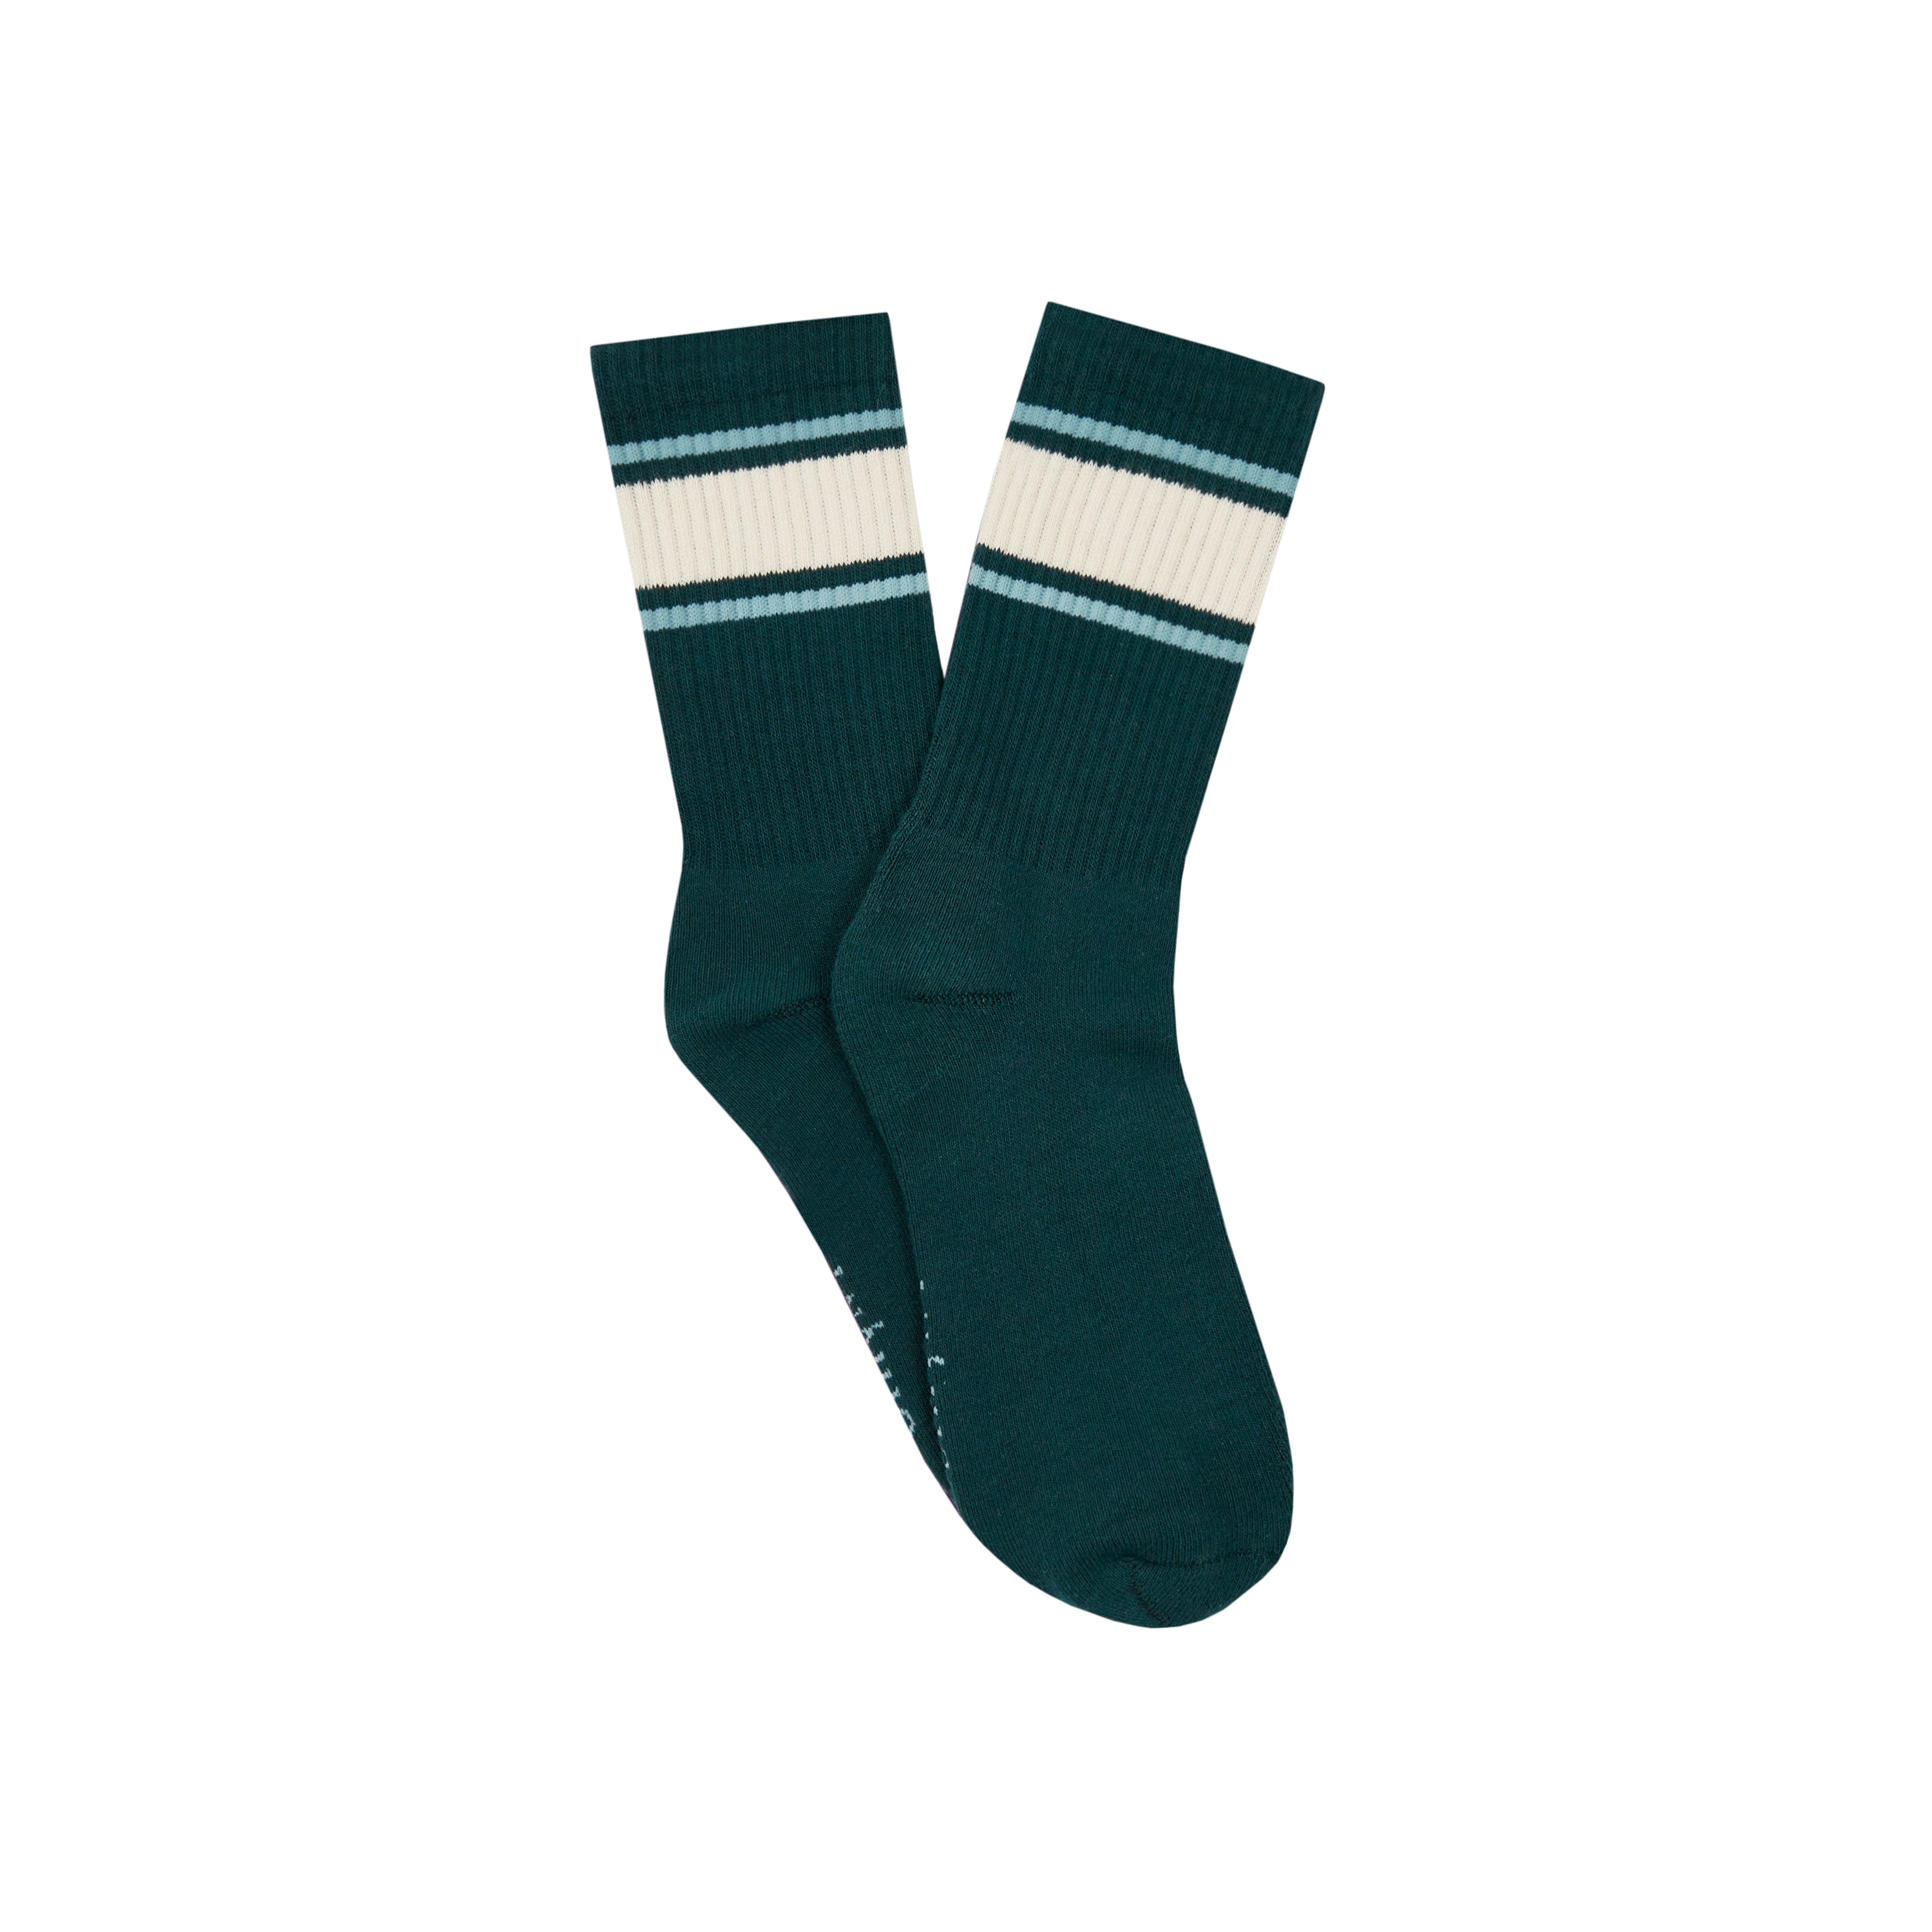 Varsity Socks - Salty/Sweet